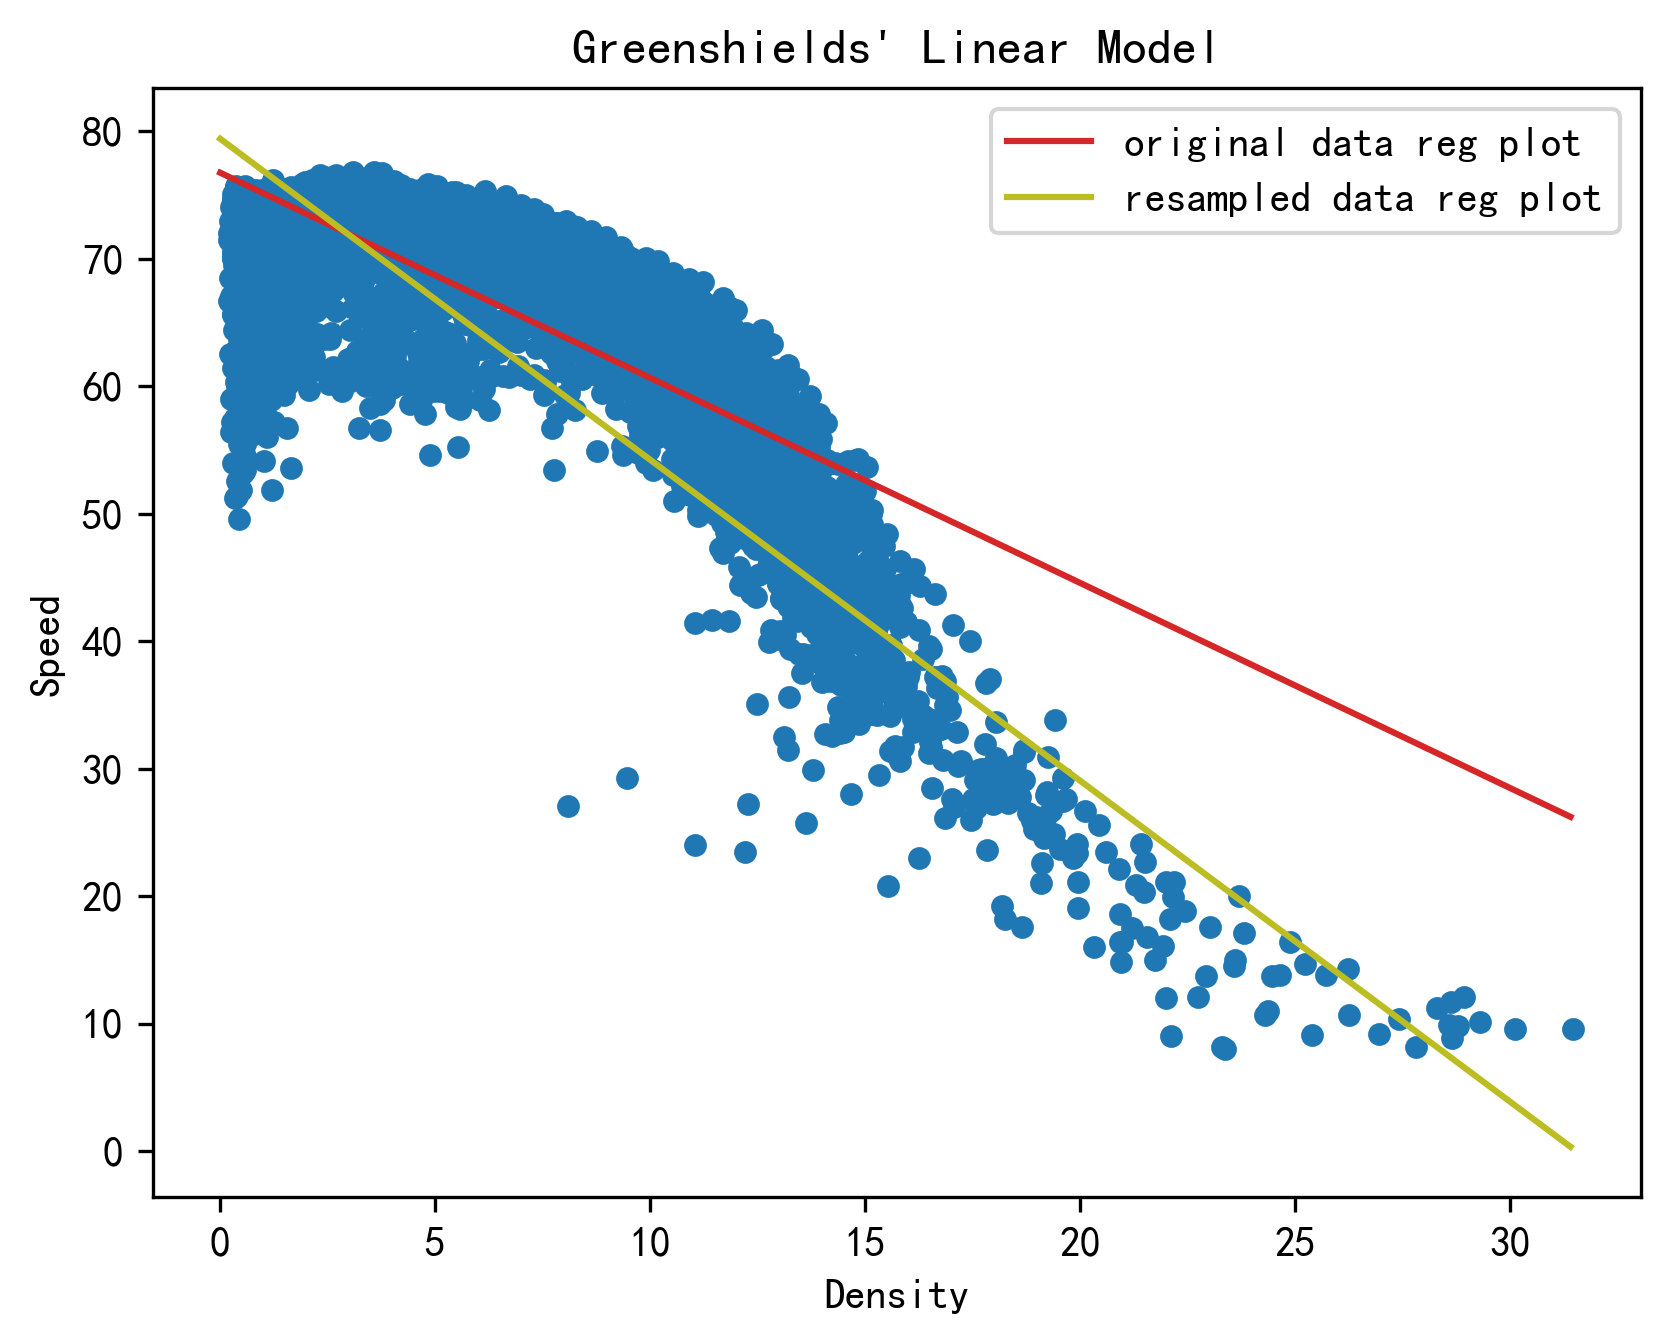 对数据点进行筛选前后格林希尔兹模型的拟合效果对比图